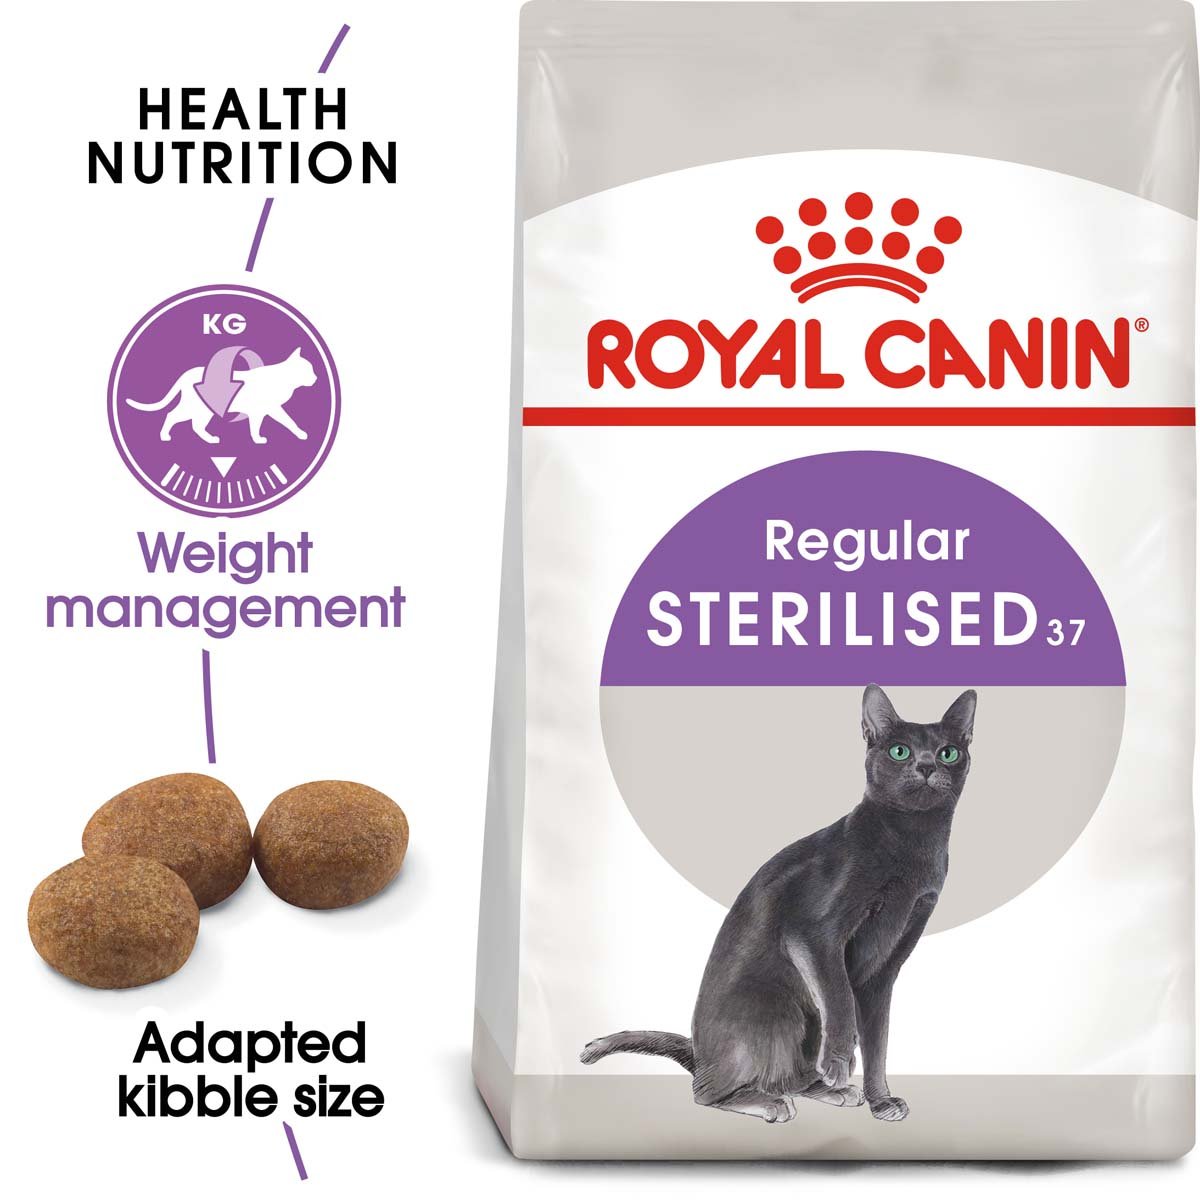 ROYAL CANIN STERILISED Trockenfutter für kastrierte Katzen 10kg